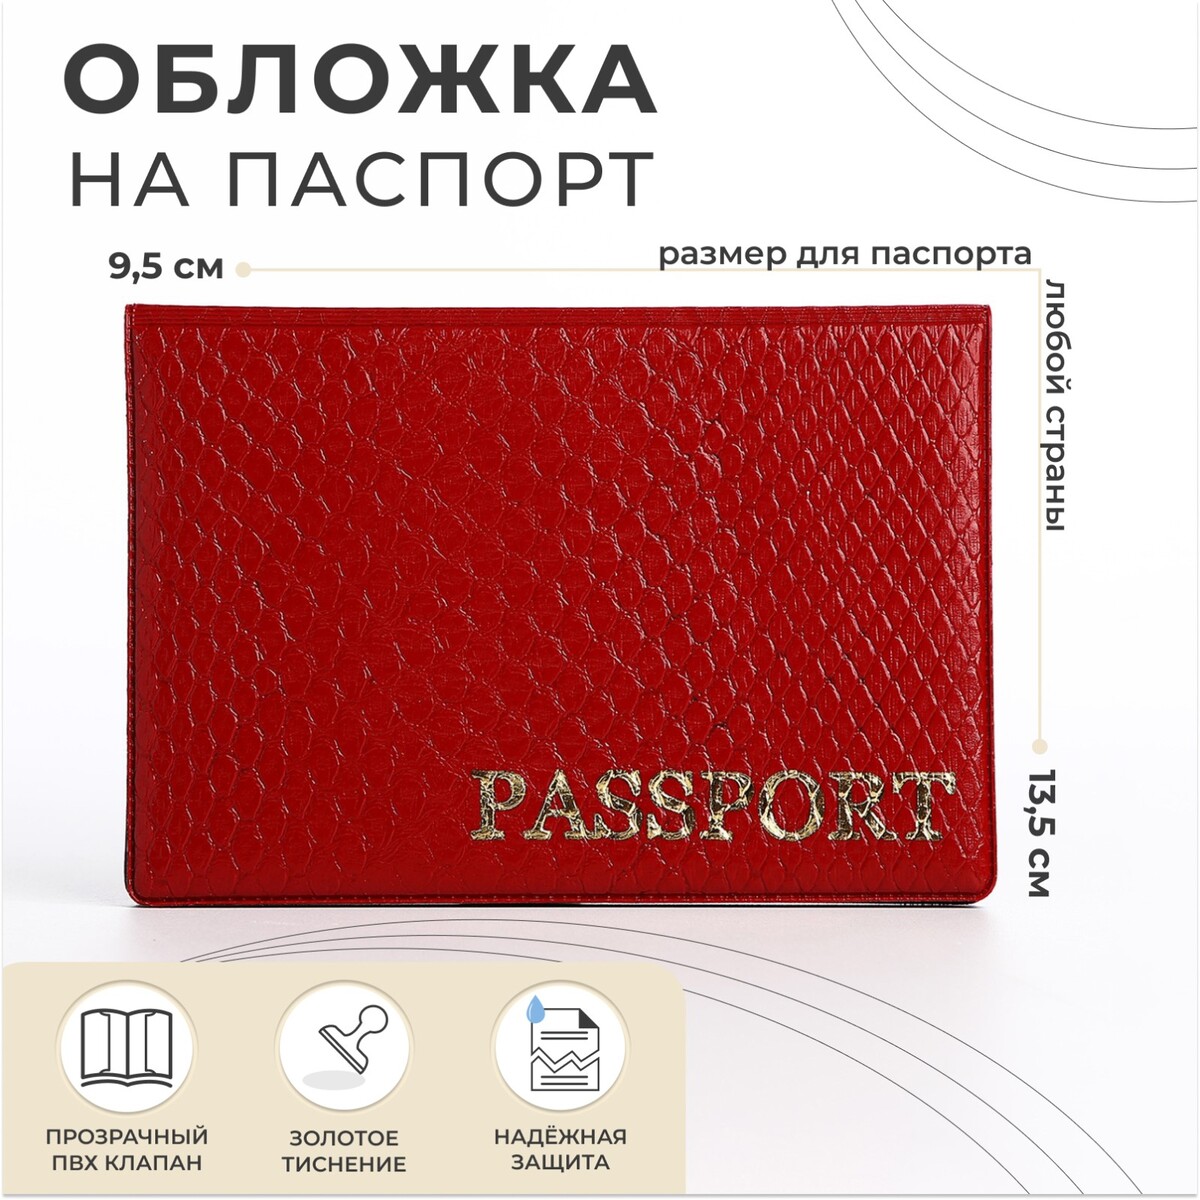 Обложка для паспорта, цвет алый алый камень